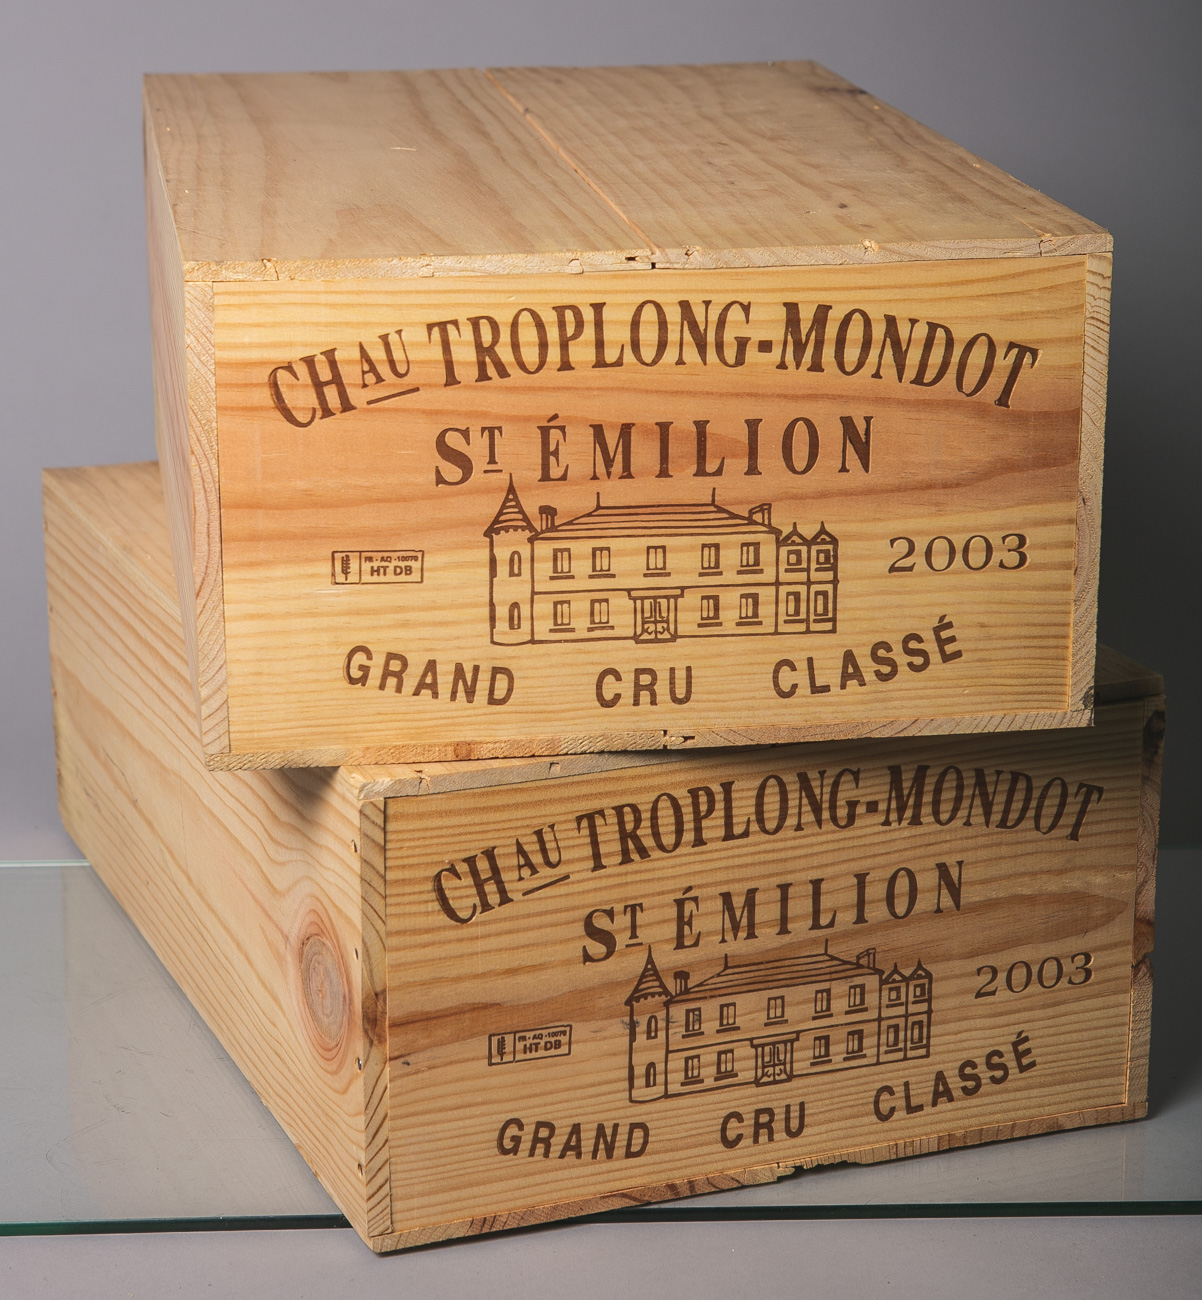 24 Flaschen von Chateau Toplong Mondot (2003), Grand Cru Classé, Rotwein, 2 Kisten à 12Flaschen, - Image 2 of 2